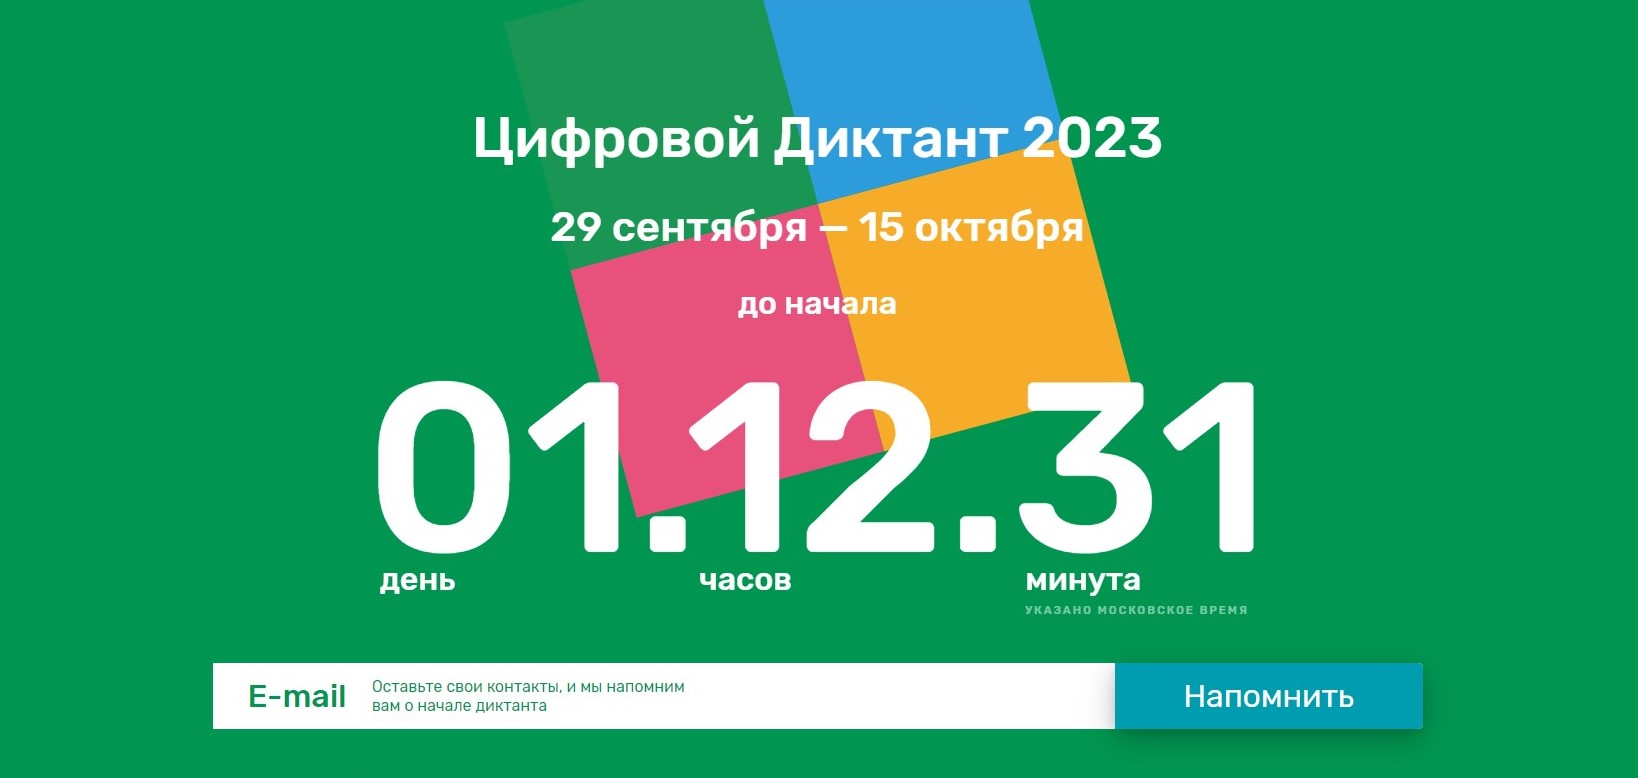 Акция «Цифровой Диктант» пройдет во всех регионах России